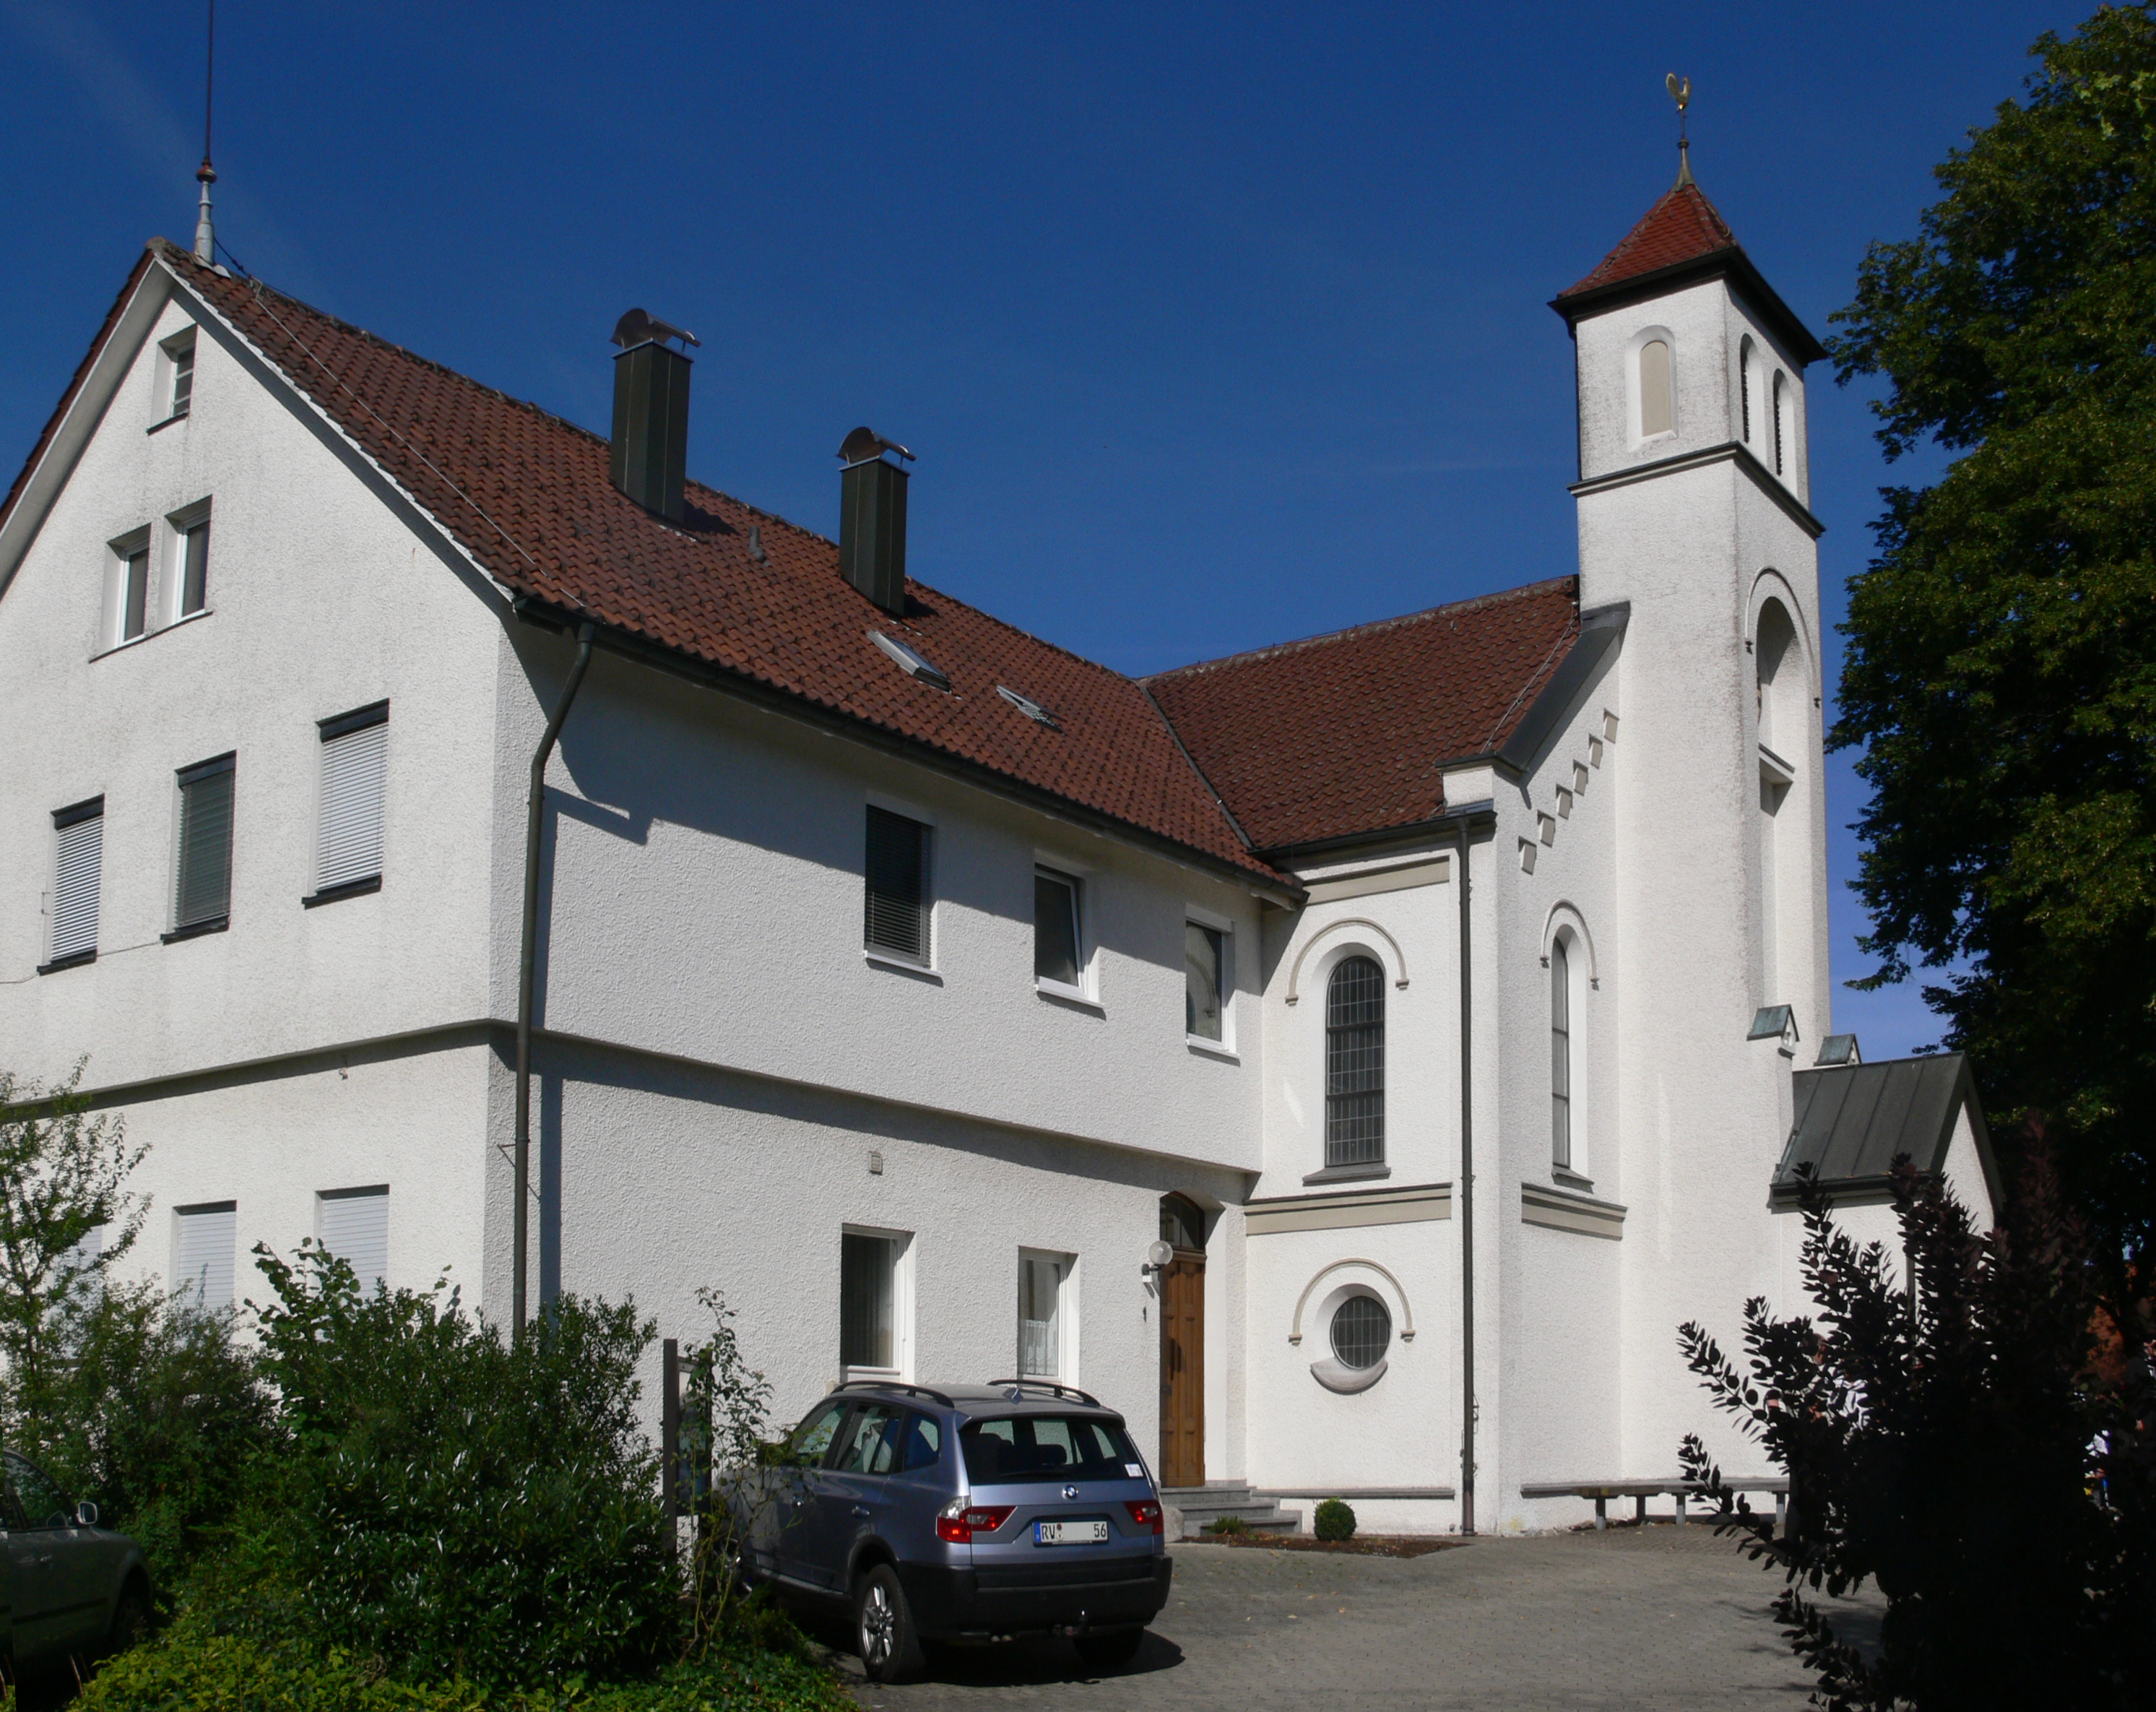 Evangelische Kirche - Evangelische Kirchengemeinde Atzenweiler-Vogt, Atzenweiler 1 in Grünkraut